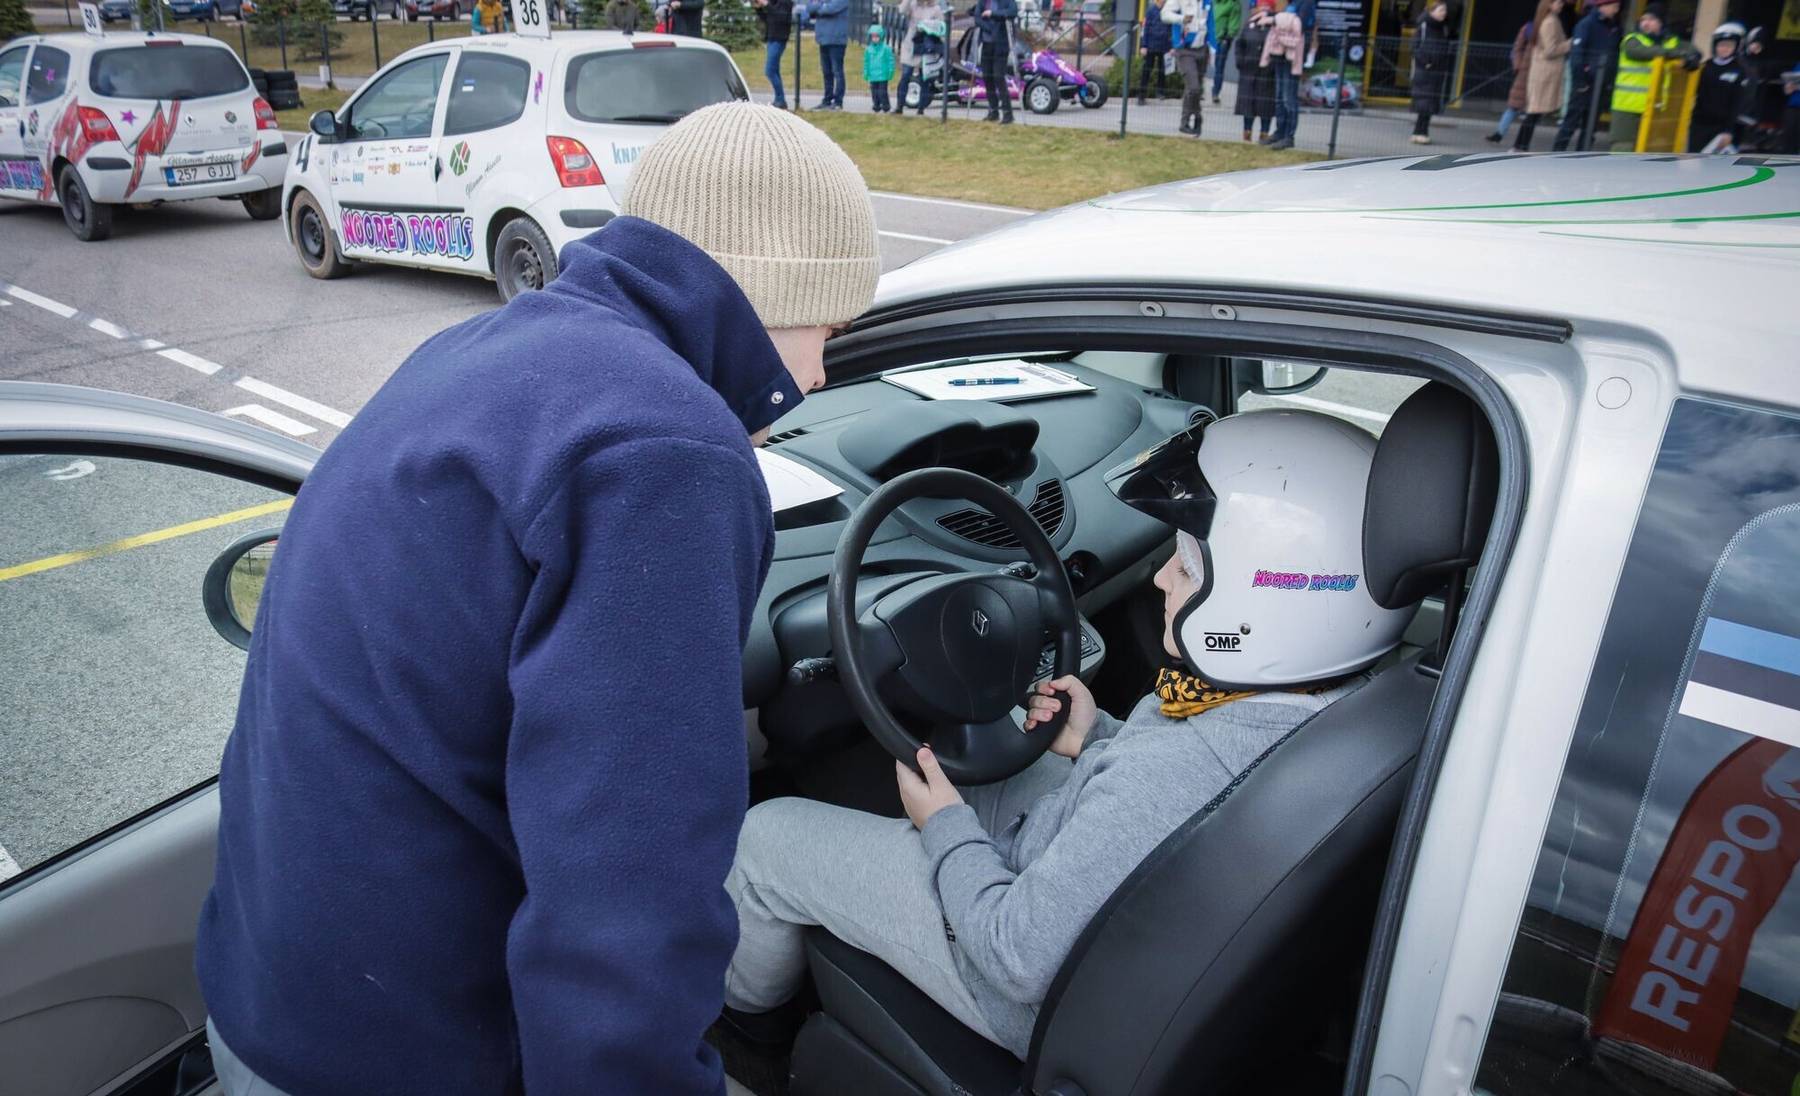 Noored Roolis võistluse käigus omandavad lapsed teadmised auto juhtimisest